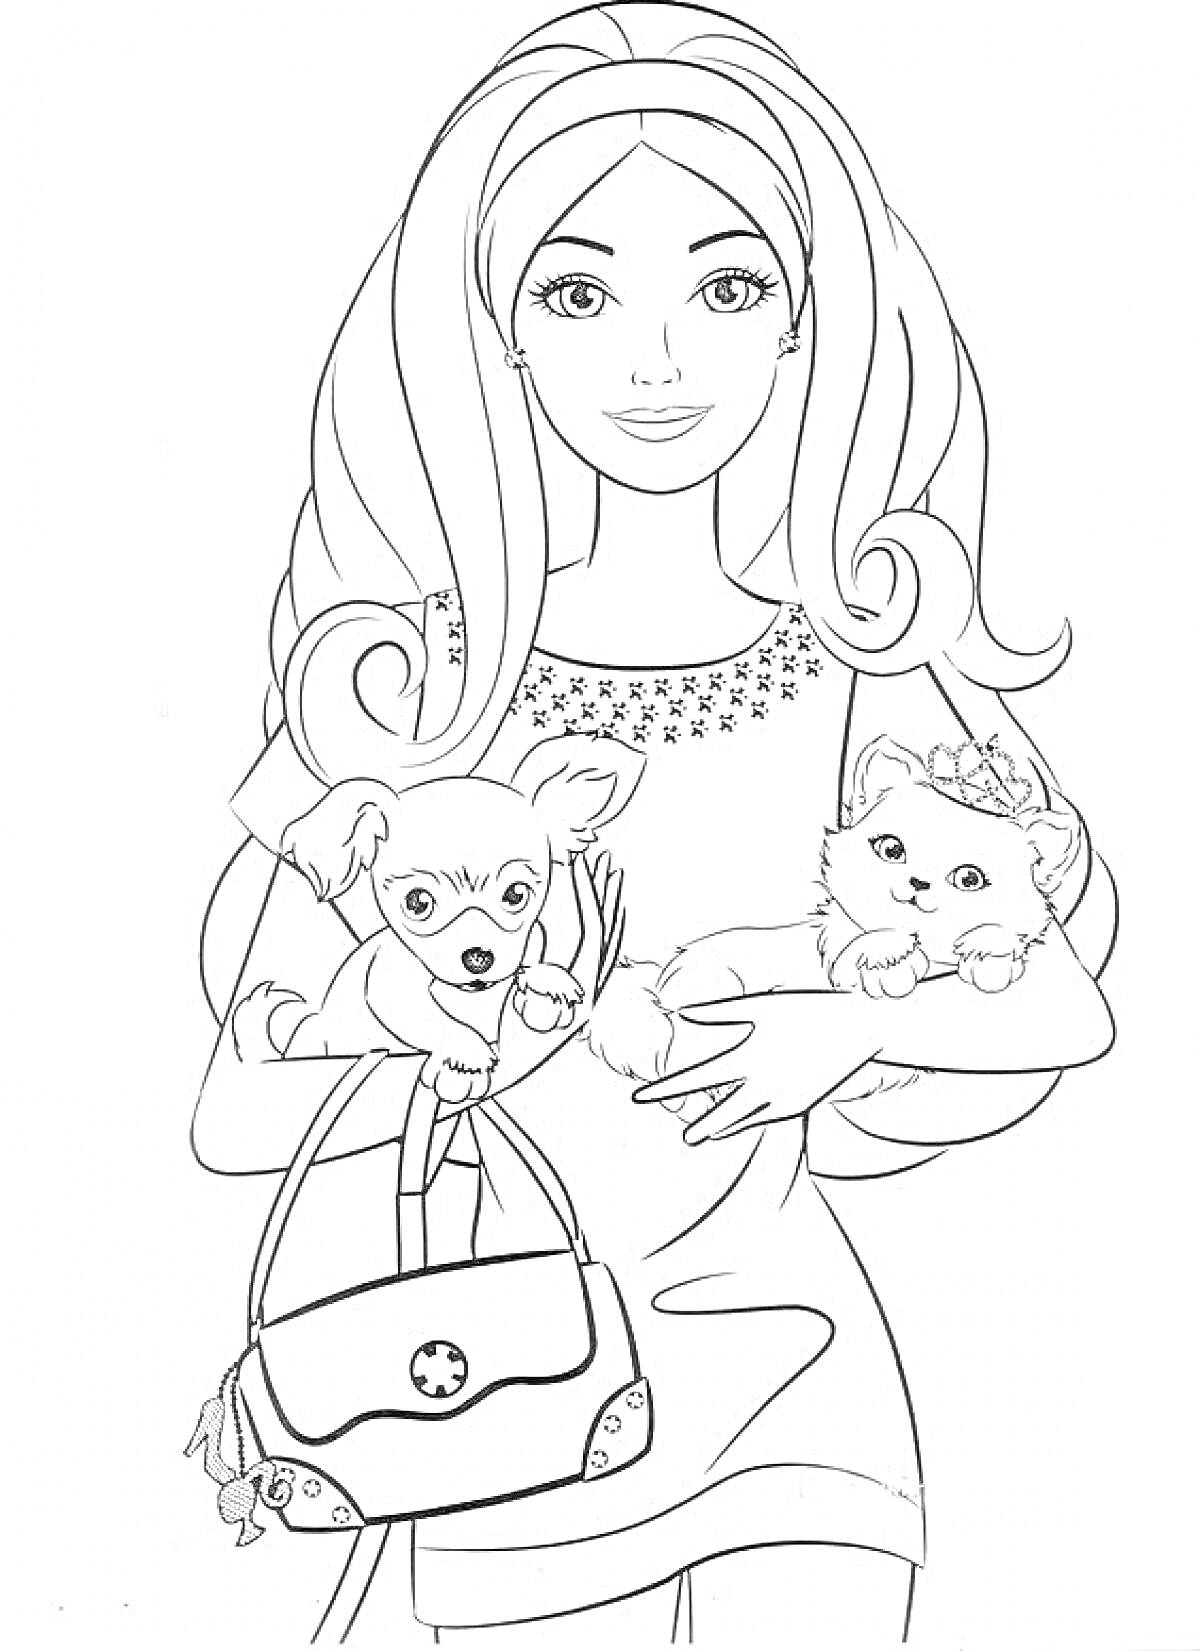 Раскраска Модница с двумя собачками, сумкой со звездочкой и украшением в виде цветка